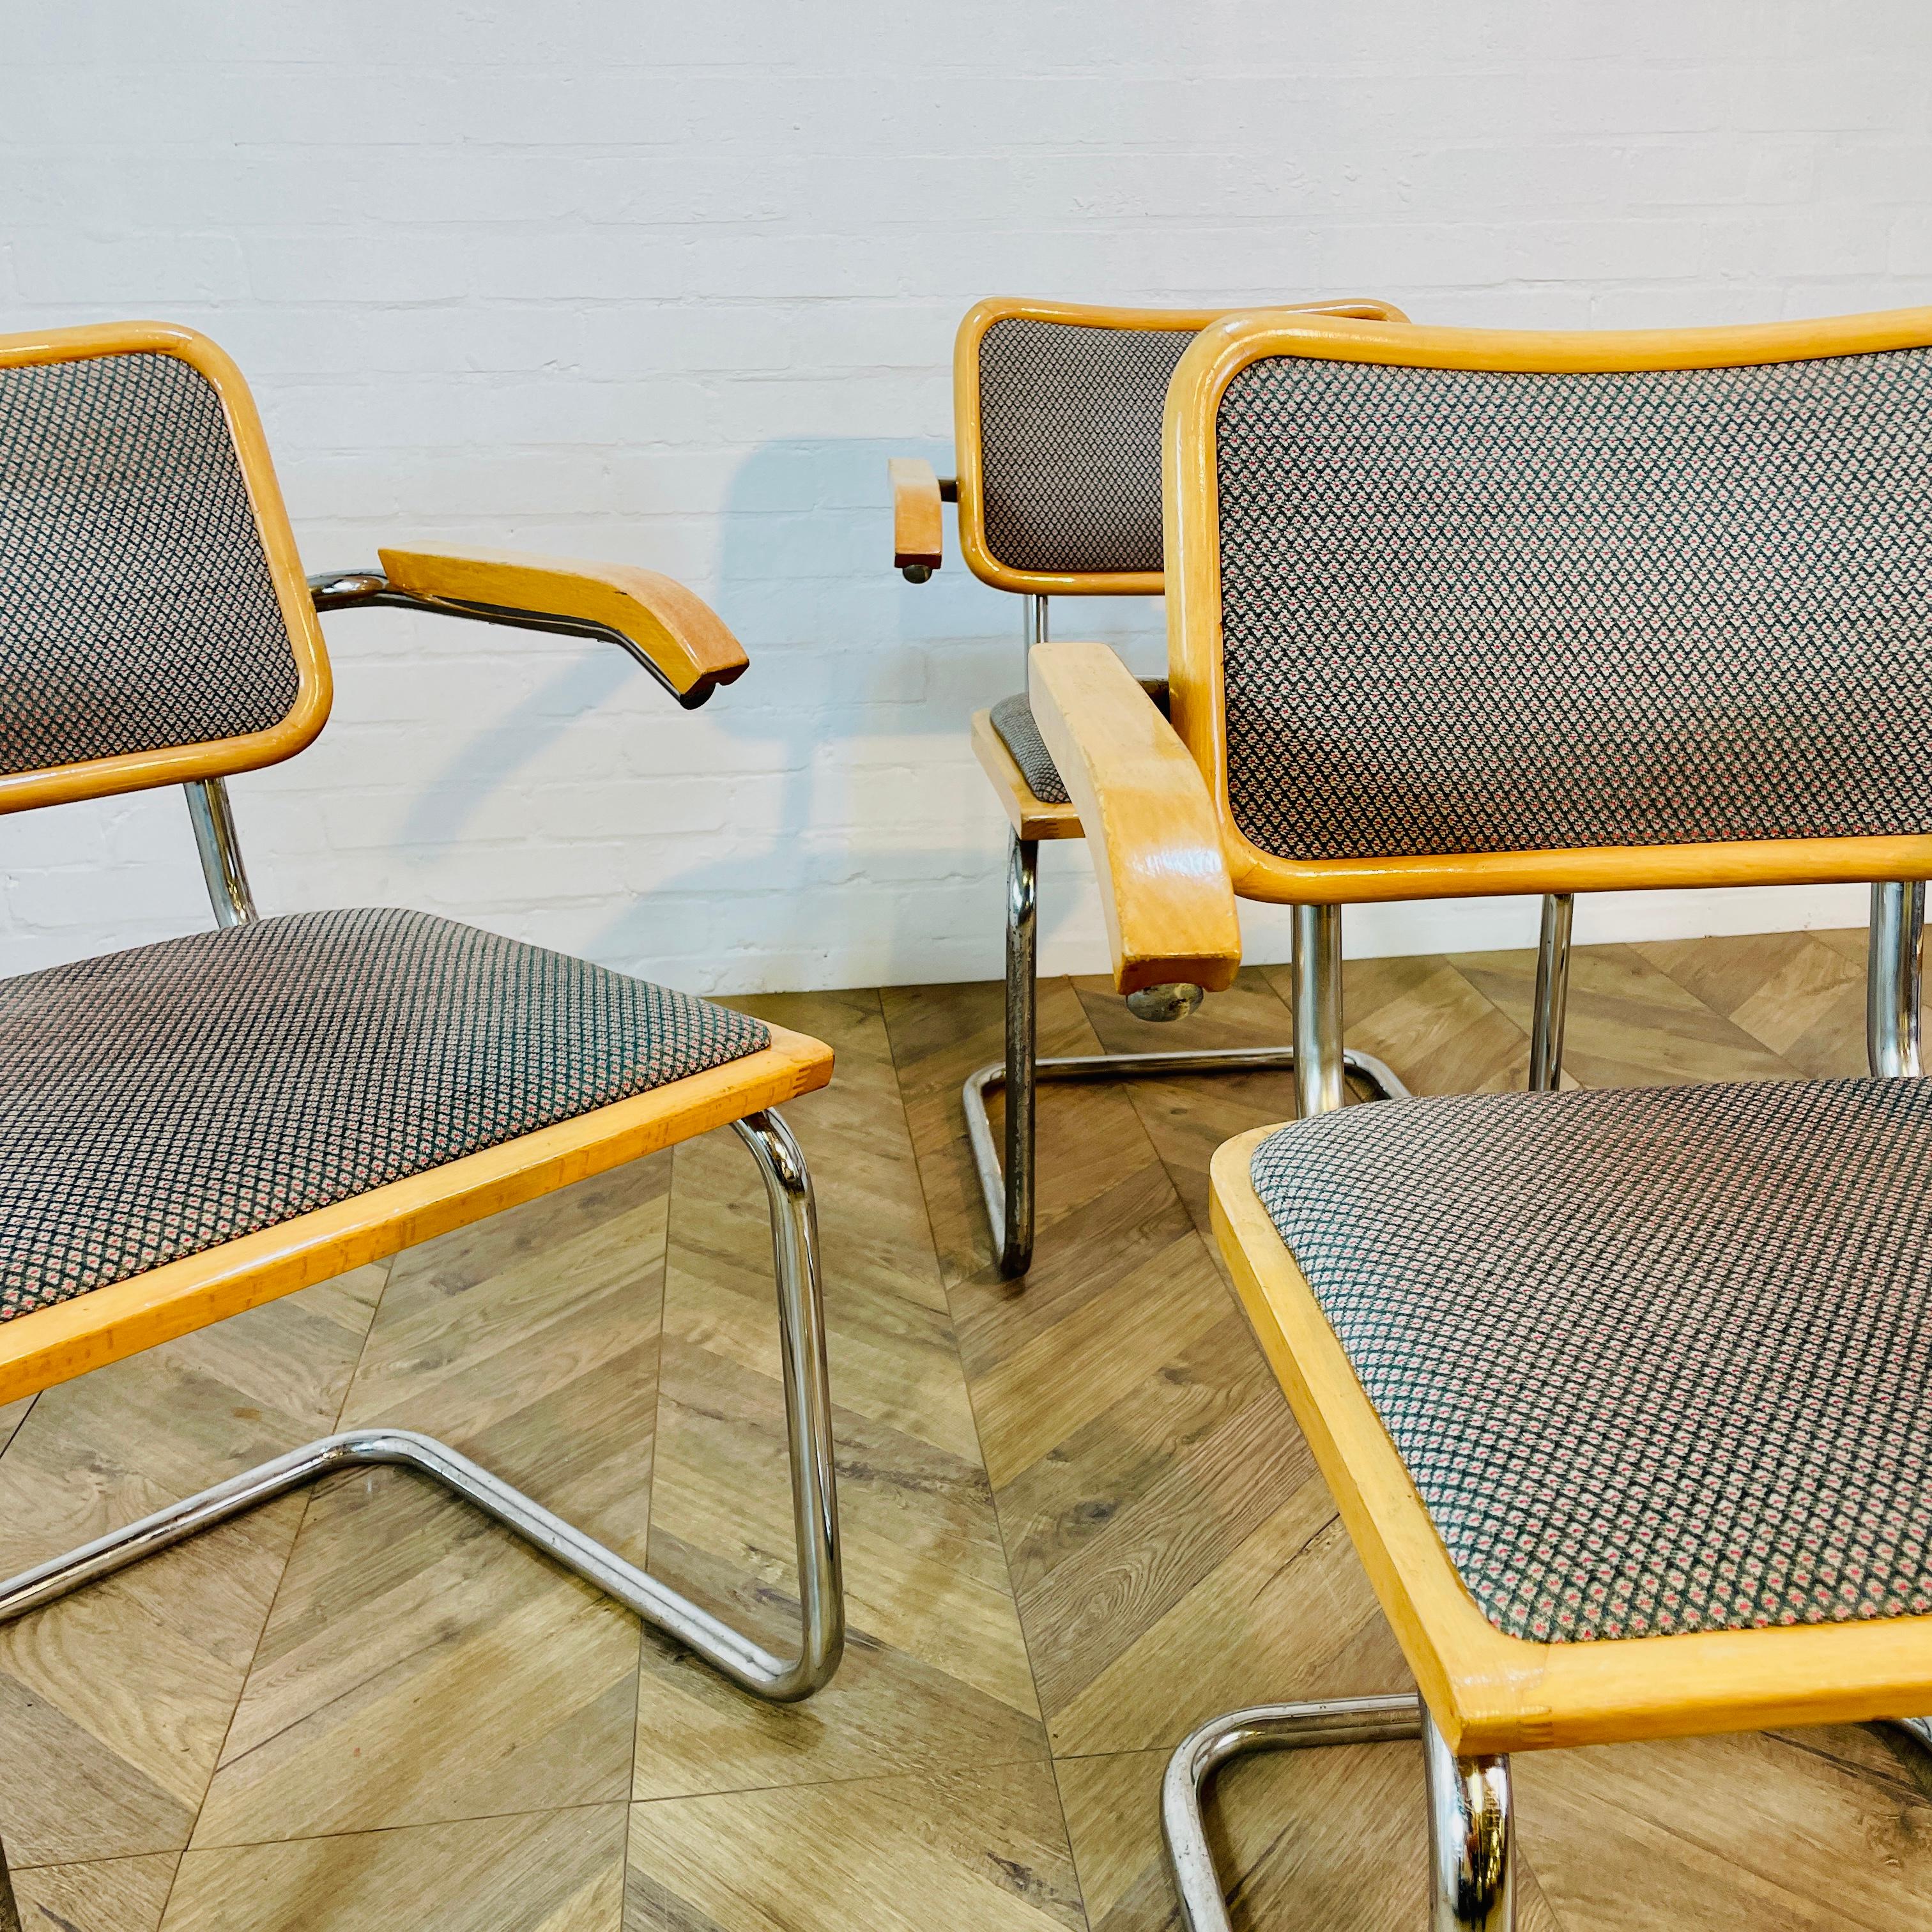 Table de salle à manger vintage, moderniste en verre et en chrome et ensemble de 4 fauteuils Marcel Breuer B32 'Cesca'.

Le cadre tubulaire chromé et le plateau en verre sont en très bon état, sans éclats et avec une usure mineure, conforme à l'âge